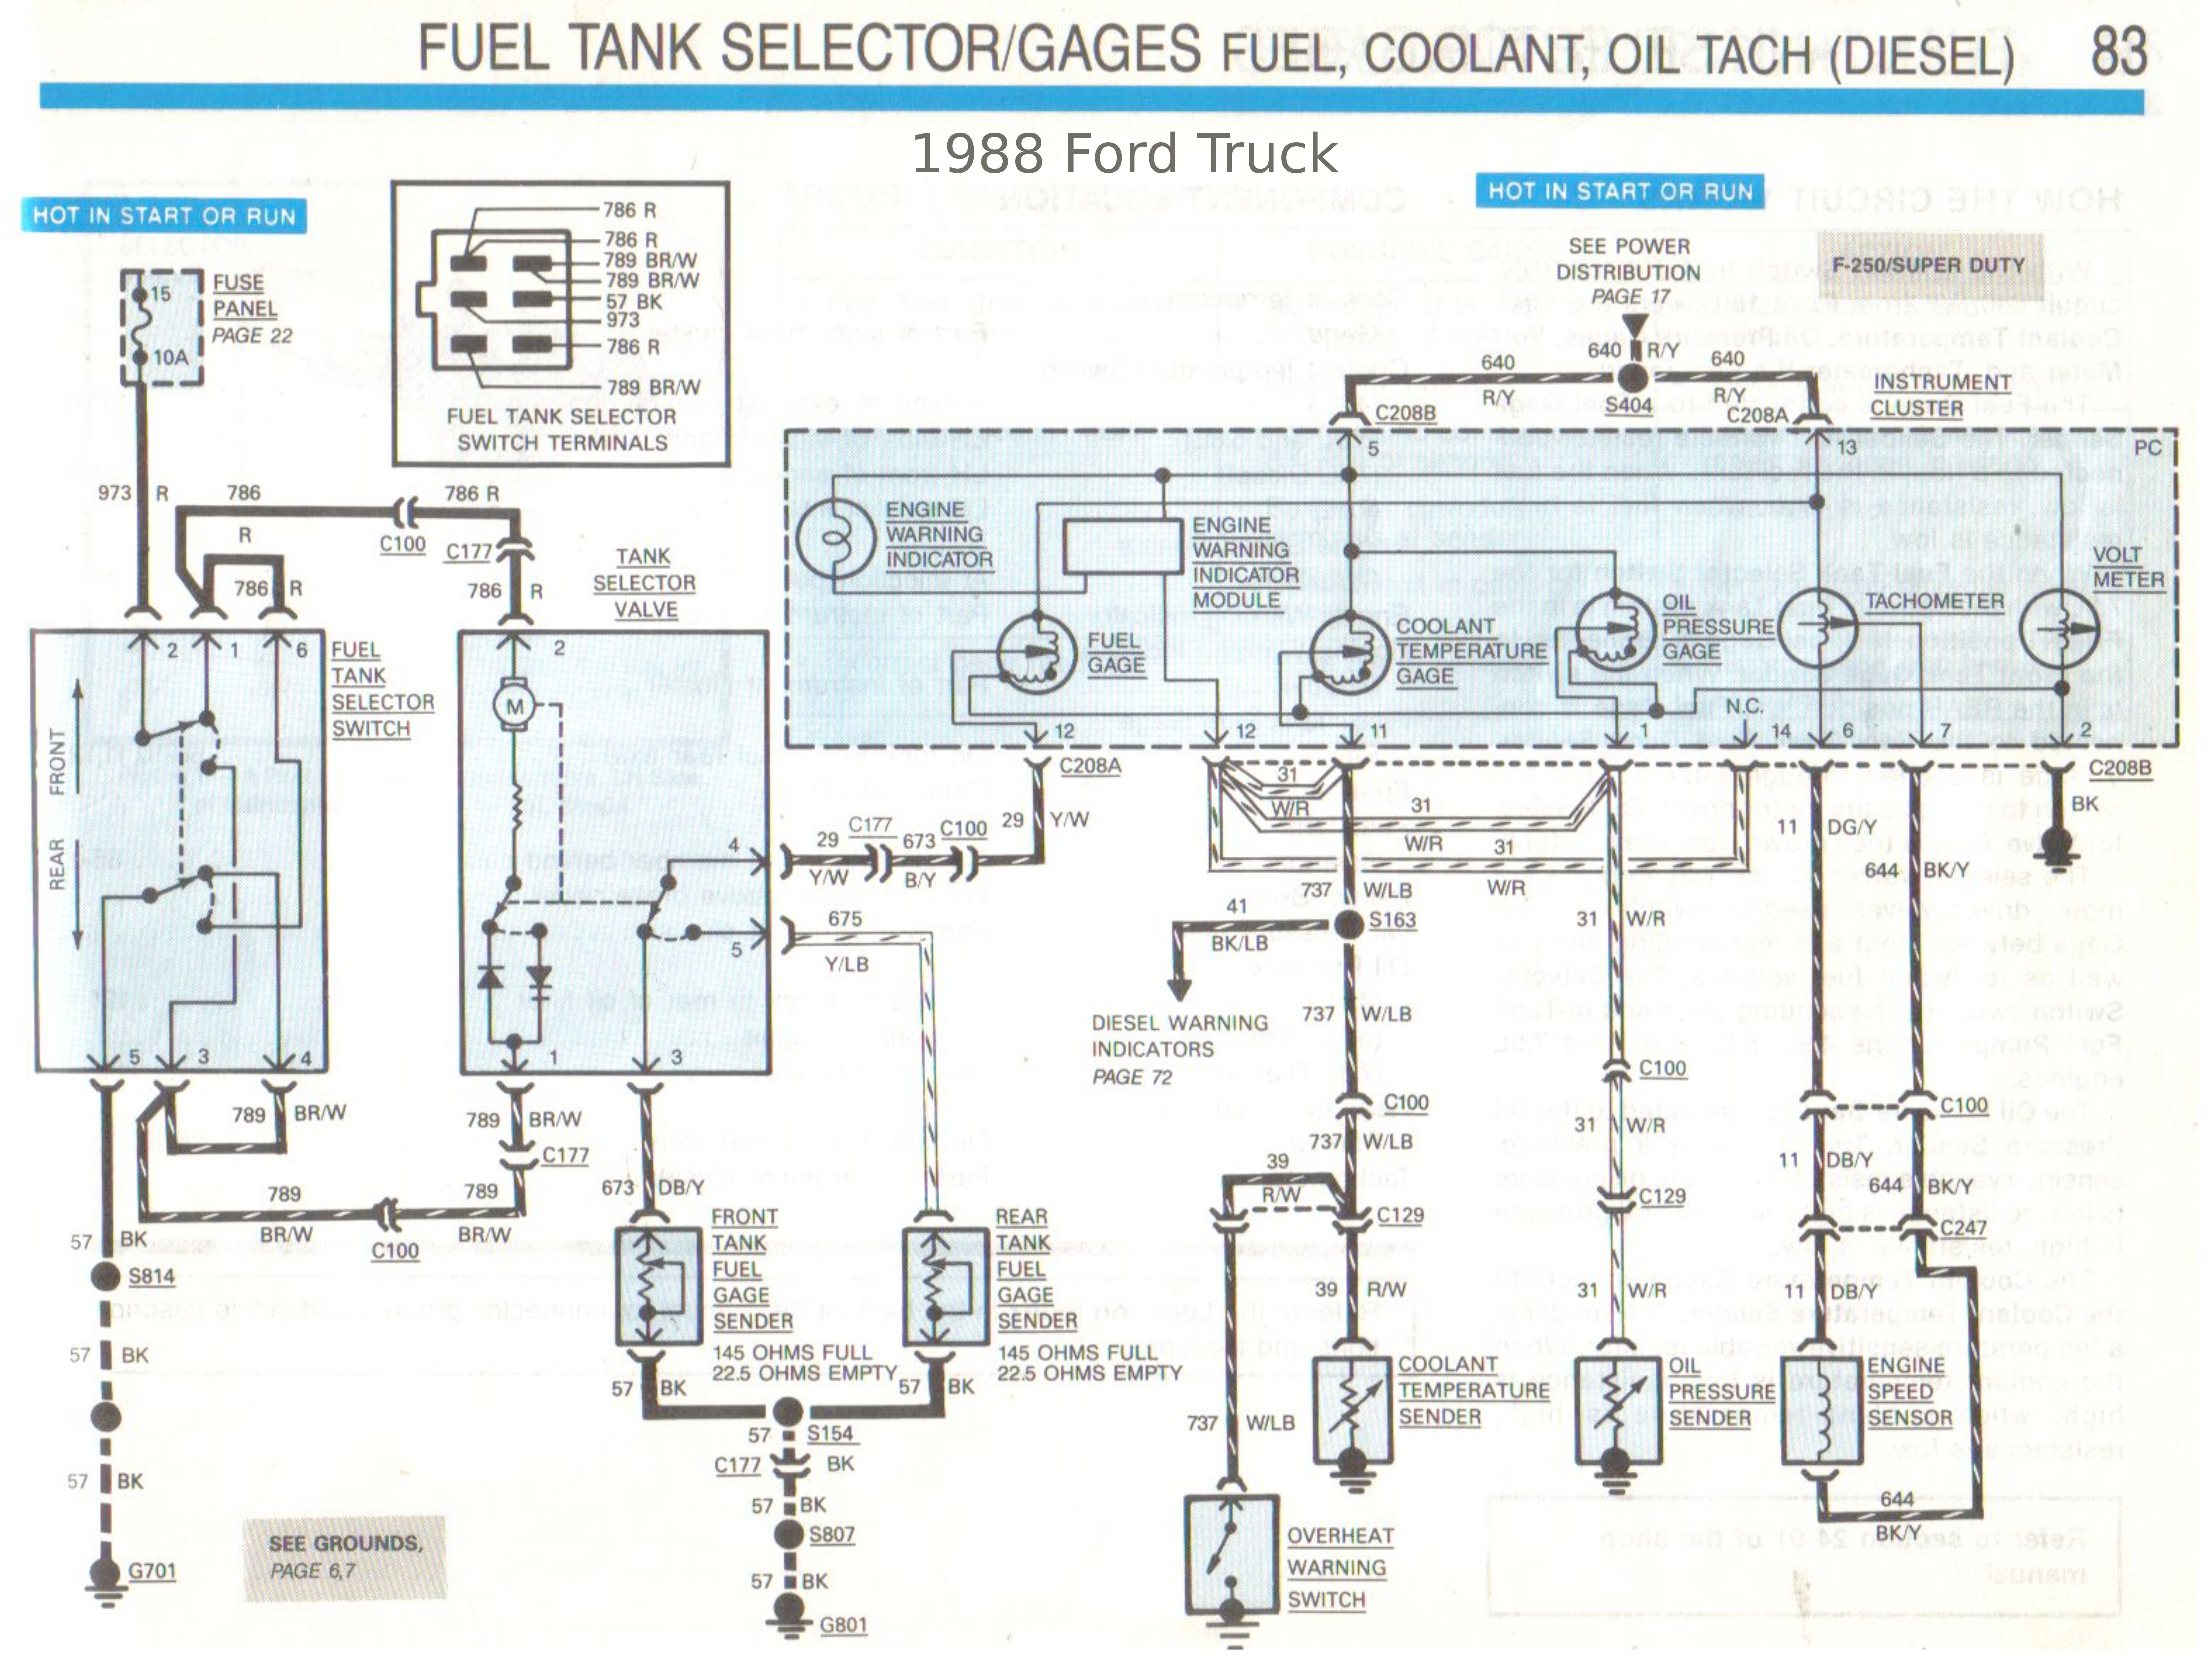 Fuel Tank Selector Switch Wiring Diagram from www.dieselwarden.net